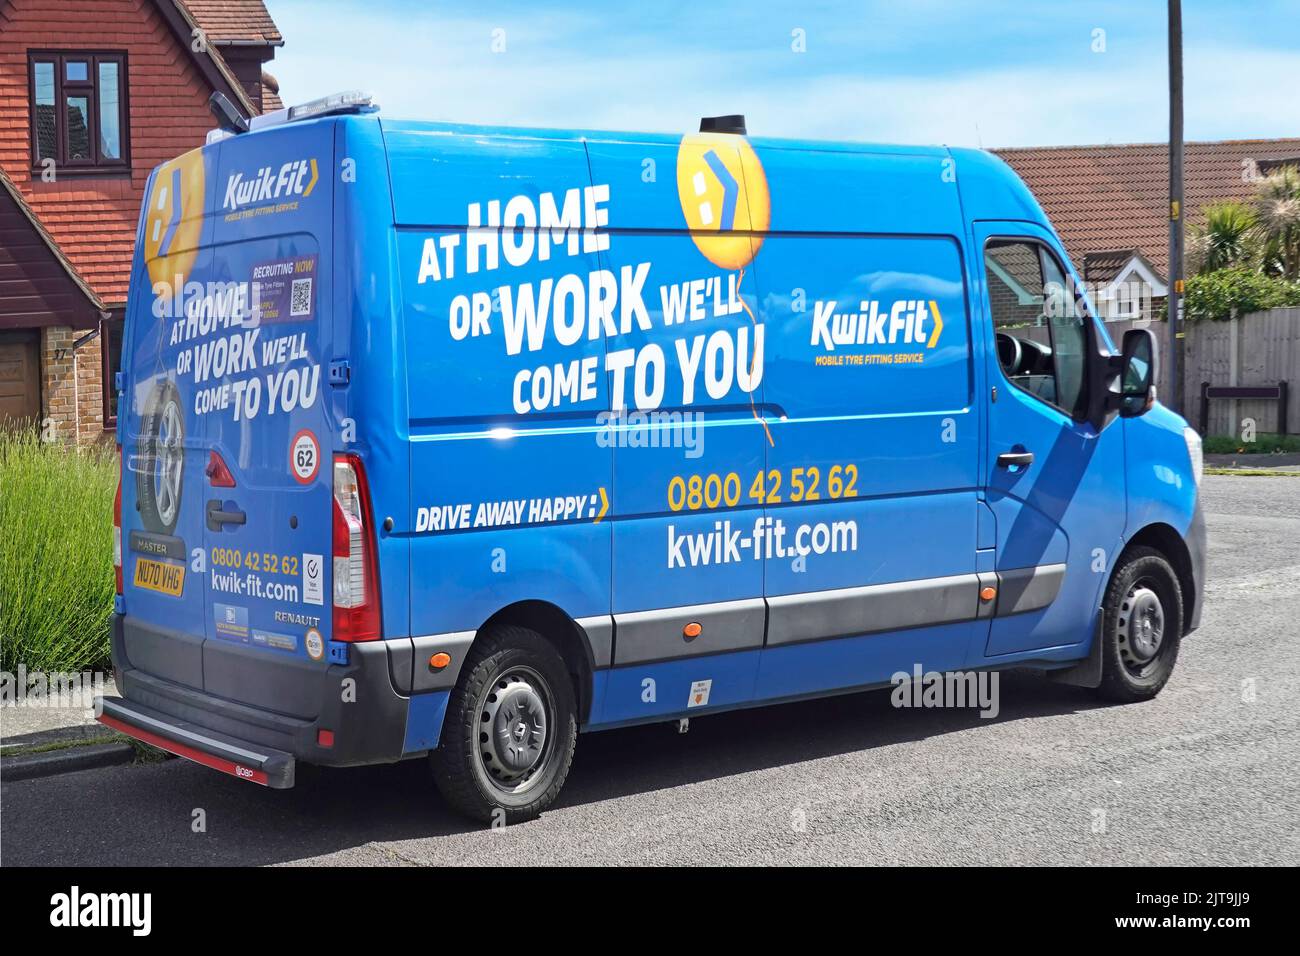 Seiten- & Rückansicht Kwick Fit Business Heim- oder Arbeitsreifenmontage-Service blau Renault Master van geparkt außerhalb Wohnimmobilie Essex England UK Stockfoto